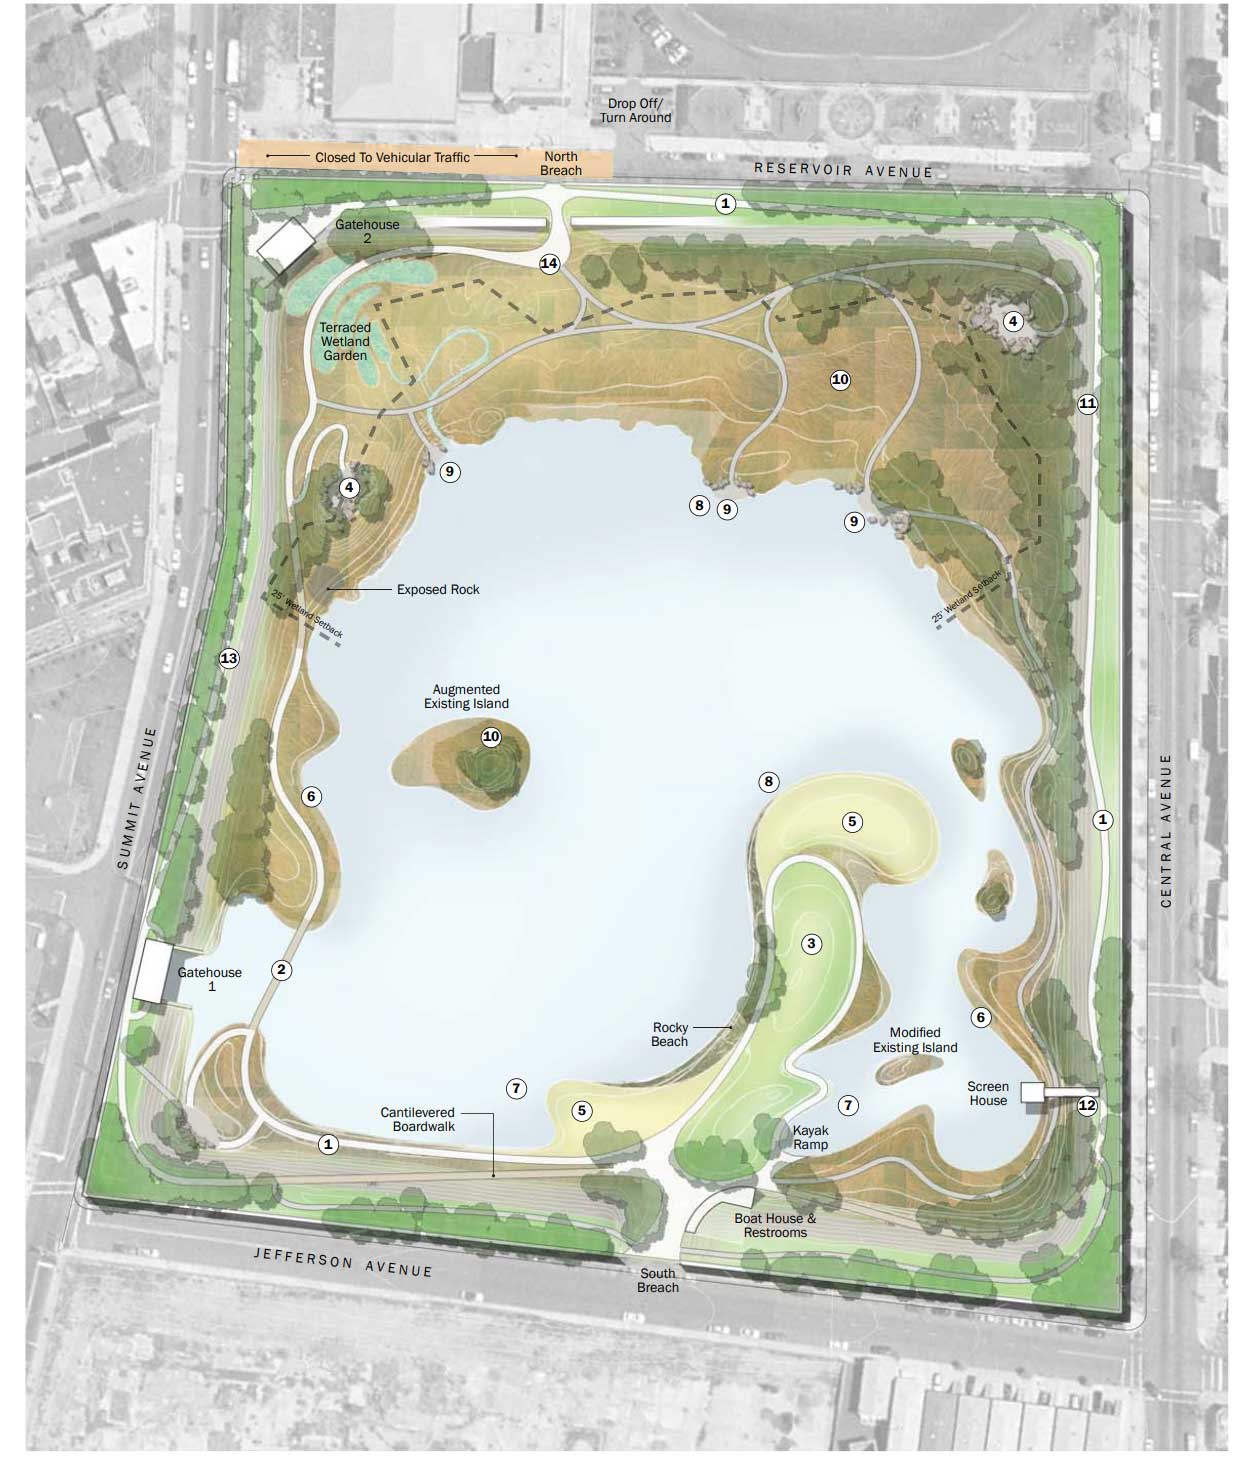 Jersey City Reservoir Renovation Plans 2